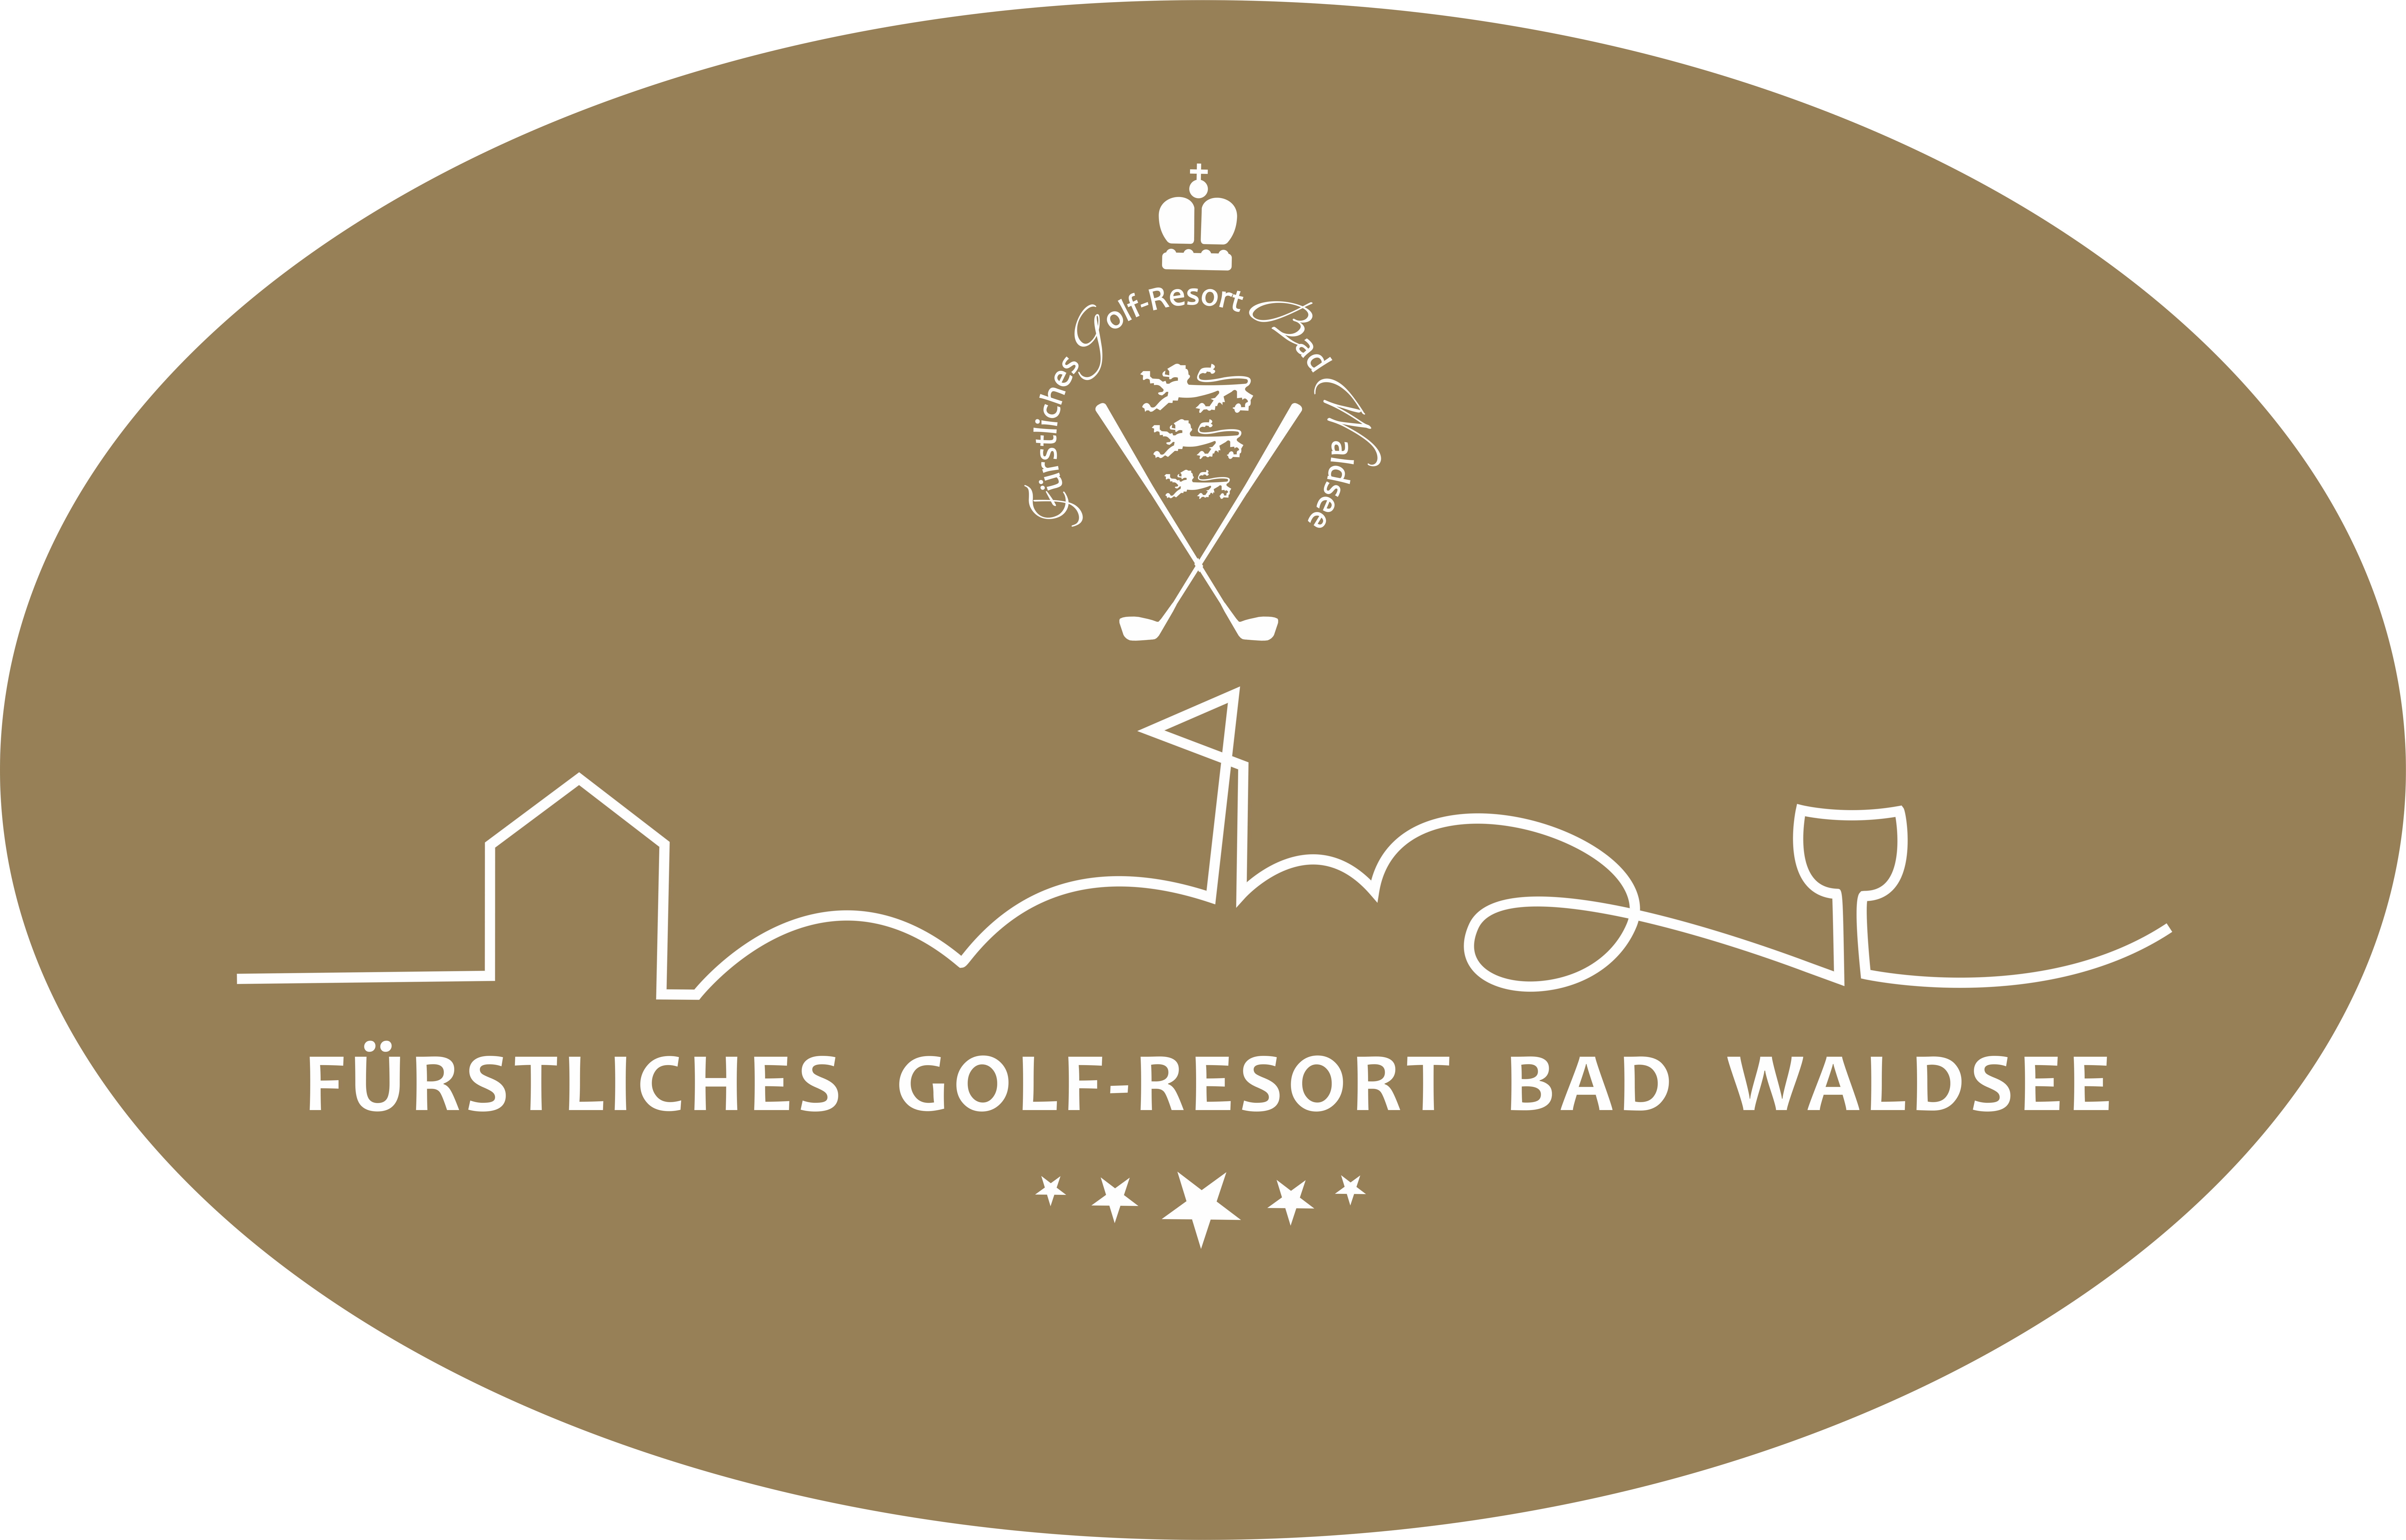 Fürstliches Golf-Resort Bad Waldsee